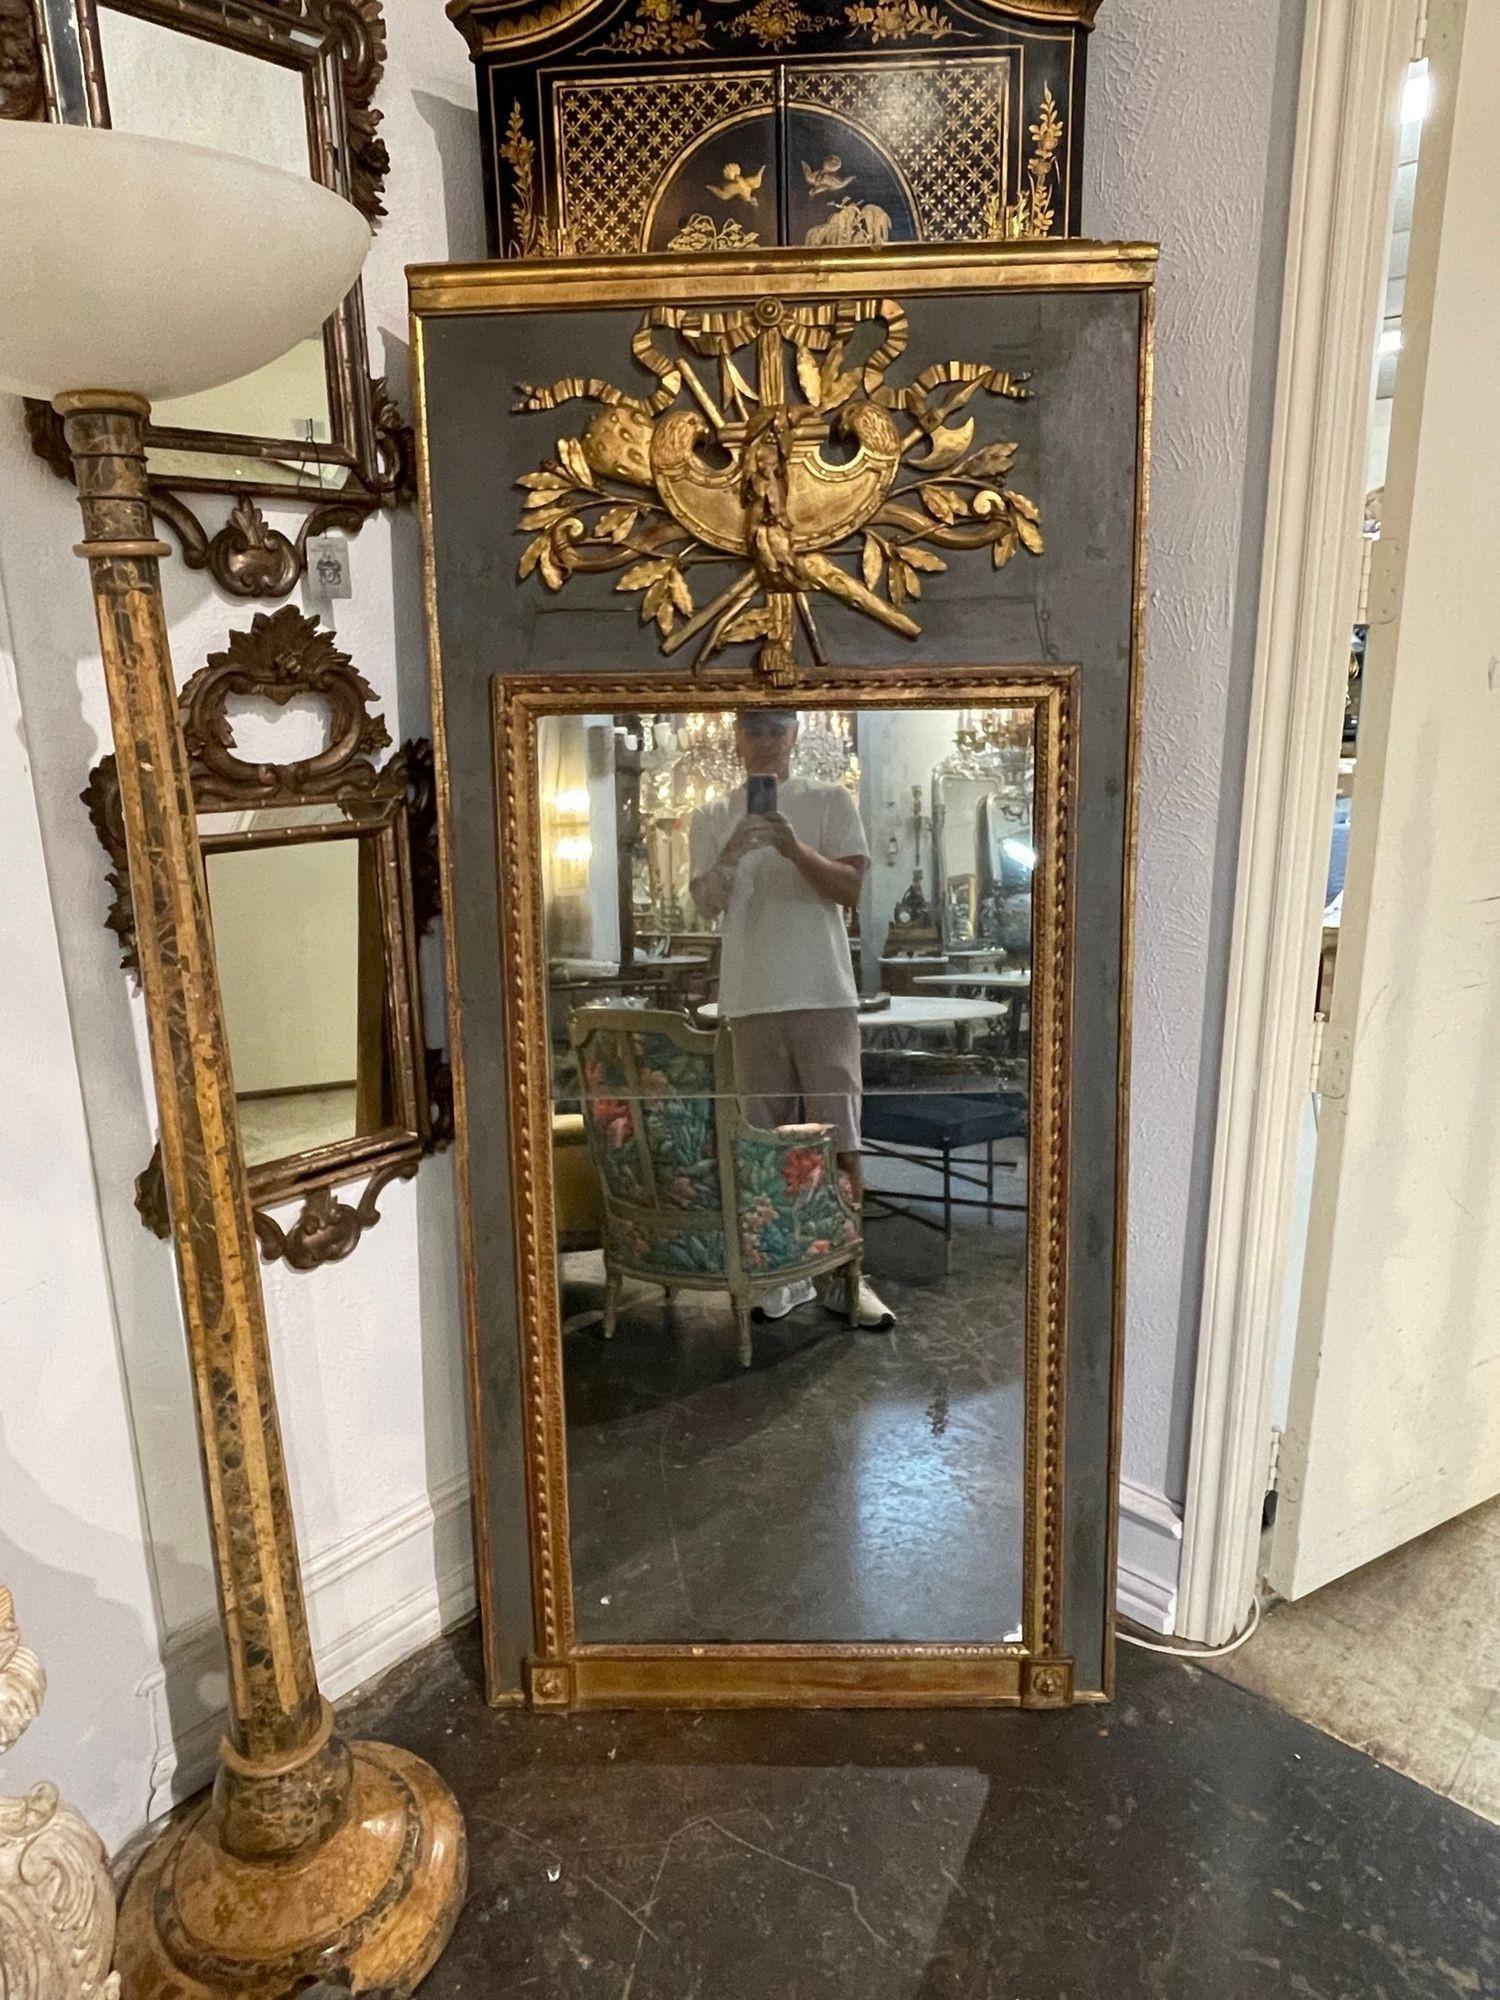 Magnifique miroir Trumeau du 18ème siècle, sculpté et doré à la feuille. Très belles sculptures, dont un grand écusson au sommet du miroir. Belle patine grise/verte également. Fabuleux !